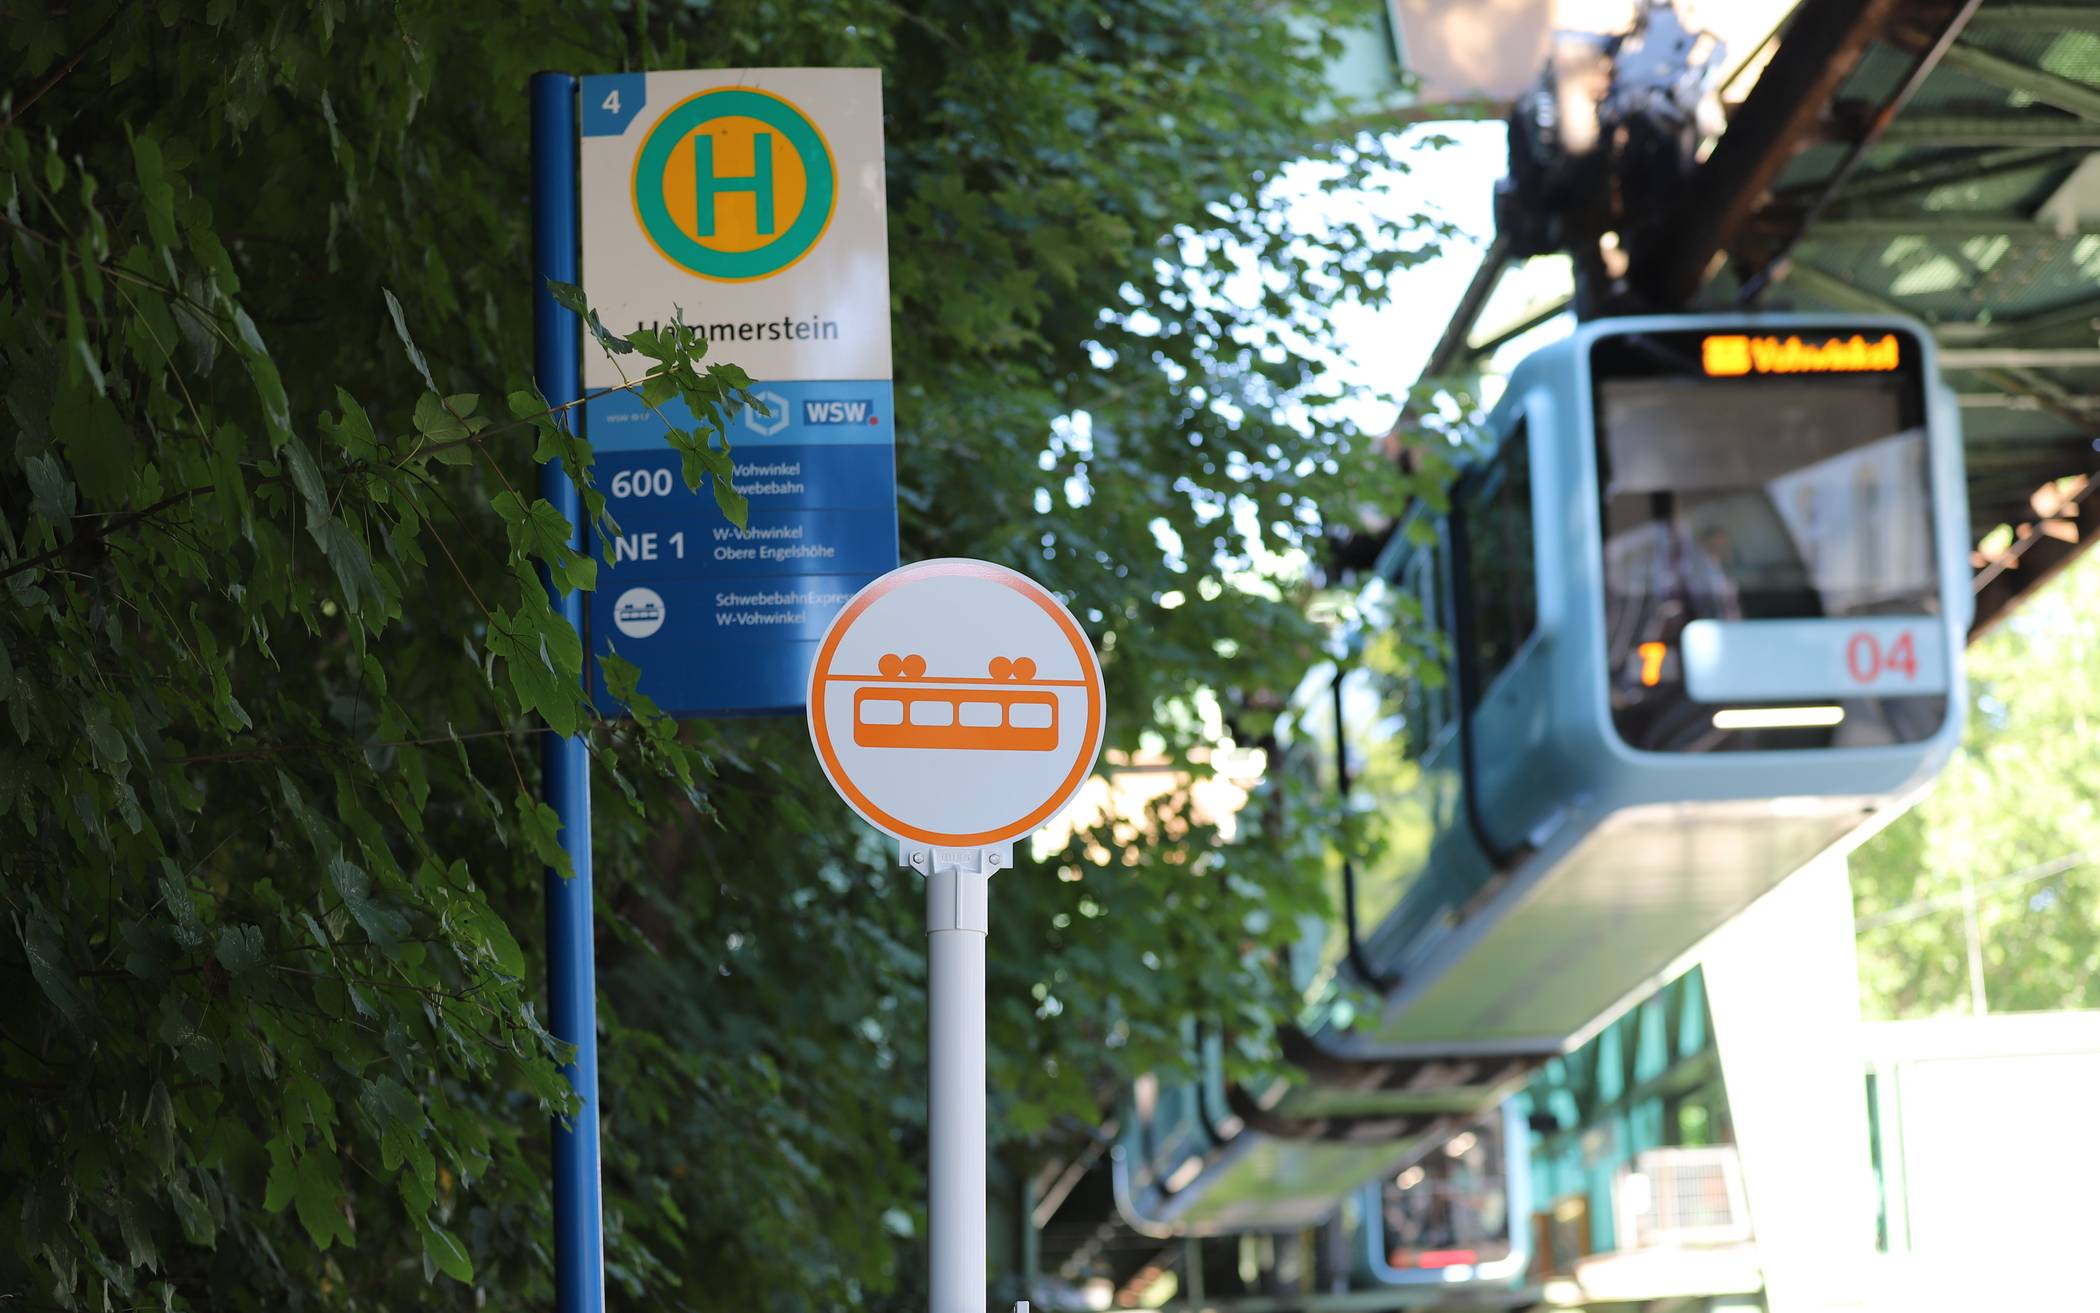 Schwebebahn-Express ändert Linienweg in Vohwinkel